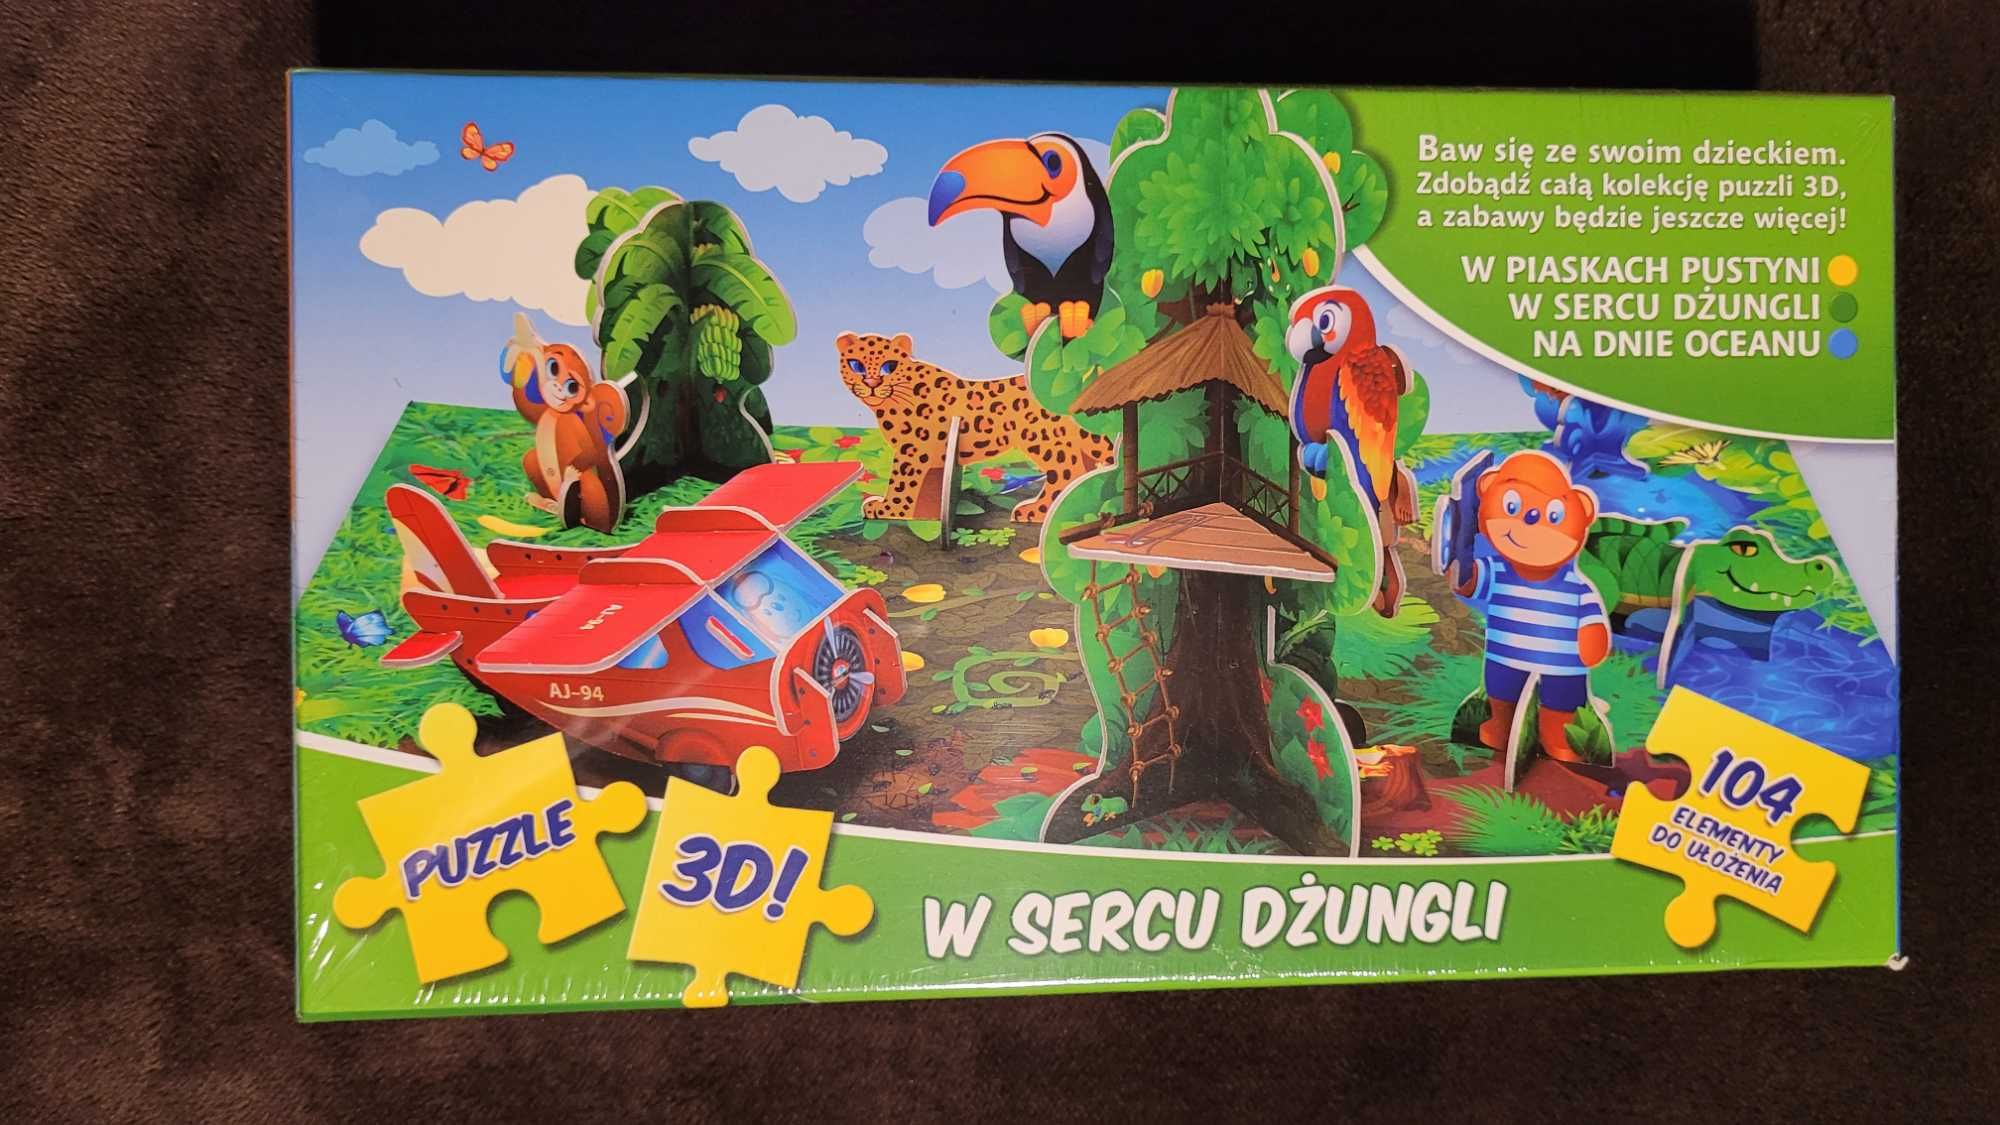 Petitiki Lubisie - puzzle 3d "W sercu dżungli", 104 elementy